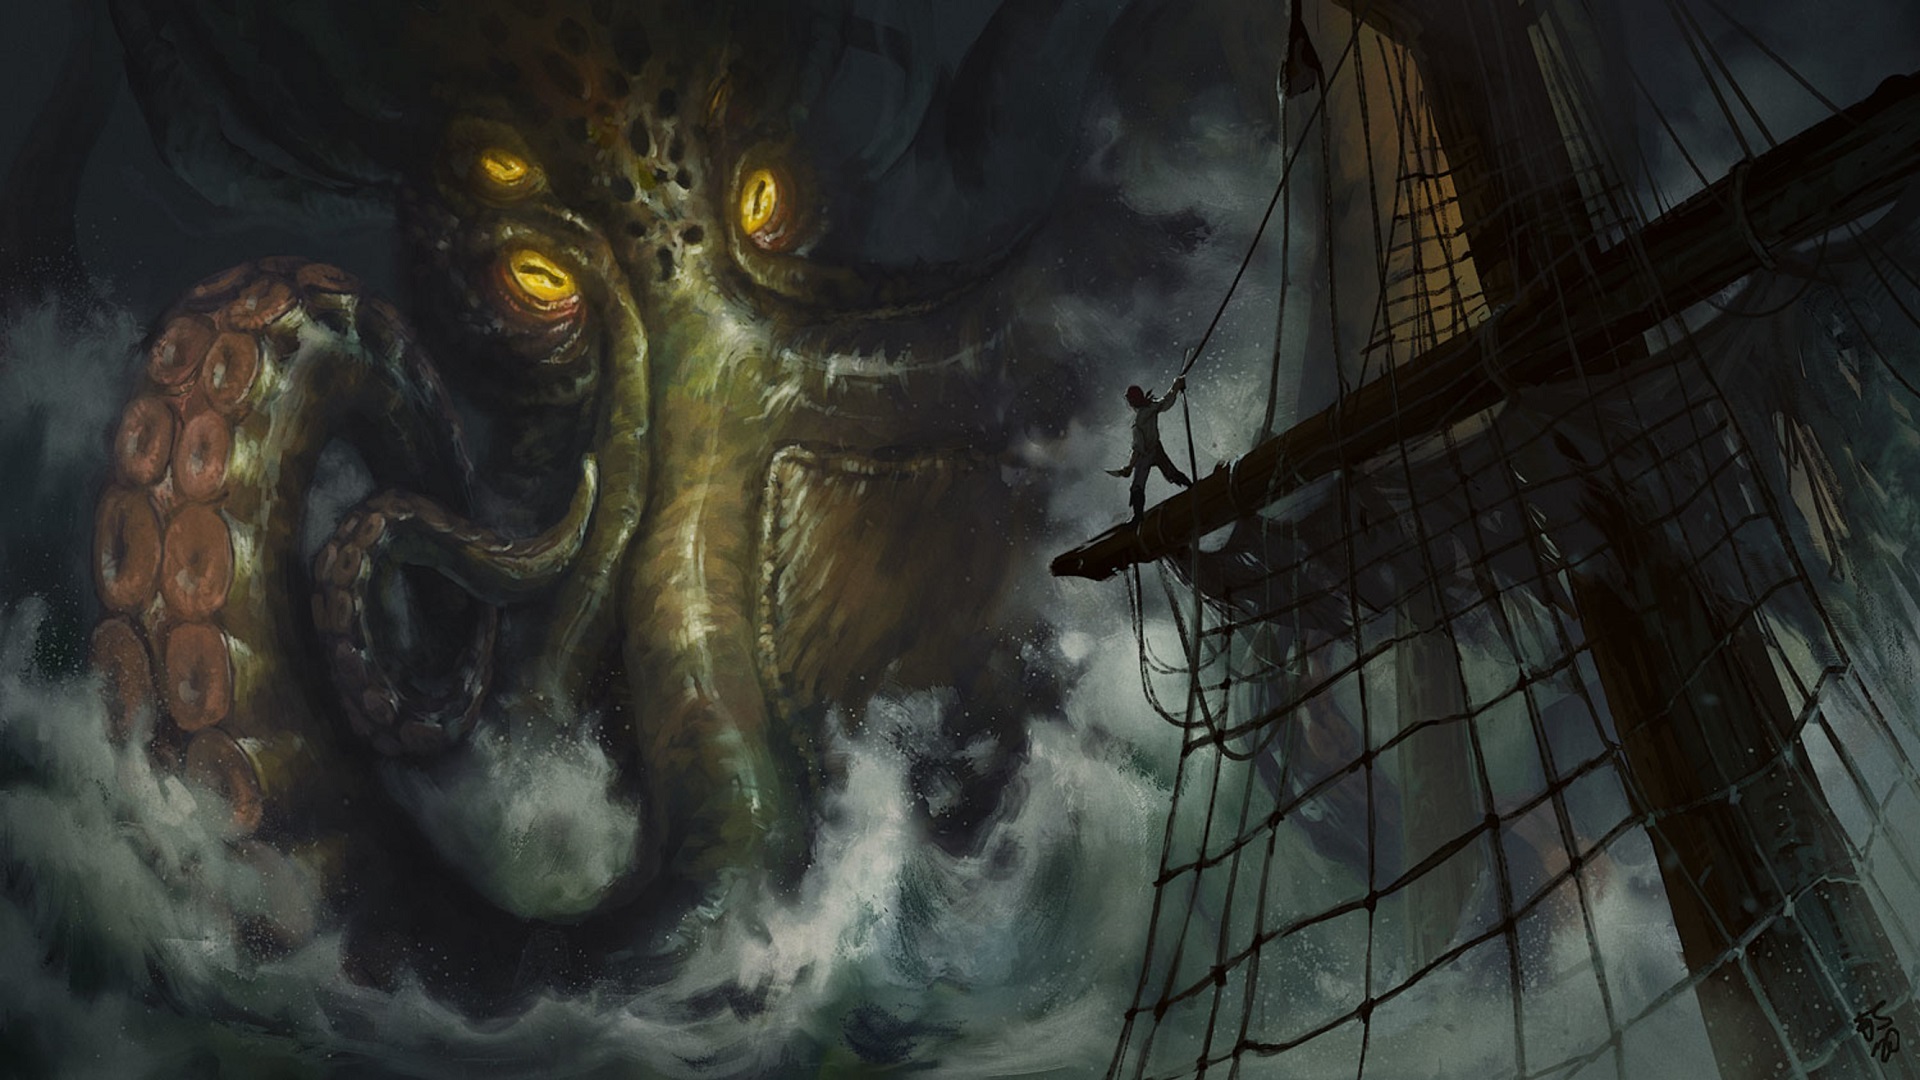 Artwork Fantasy Art Kraken Sailor Sailing Ship Wallpaper -  Resolution:1920x1080 - ID:1258004 